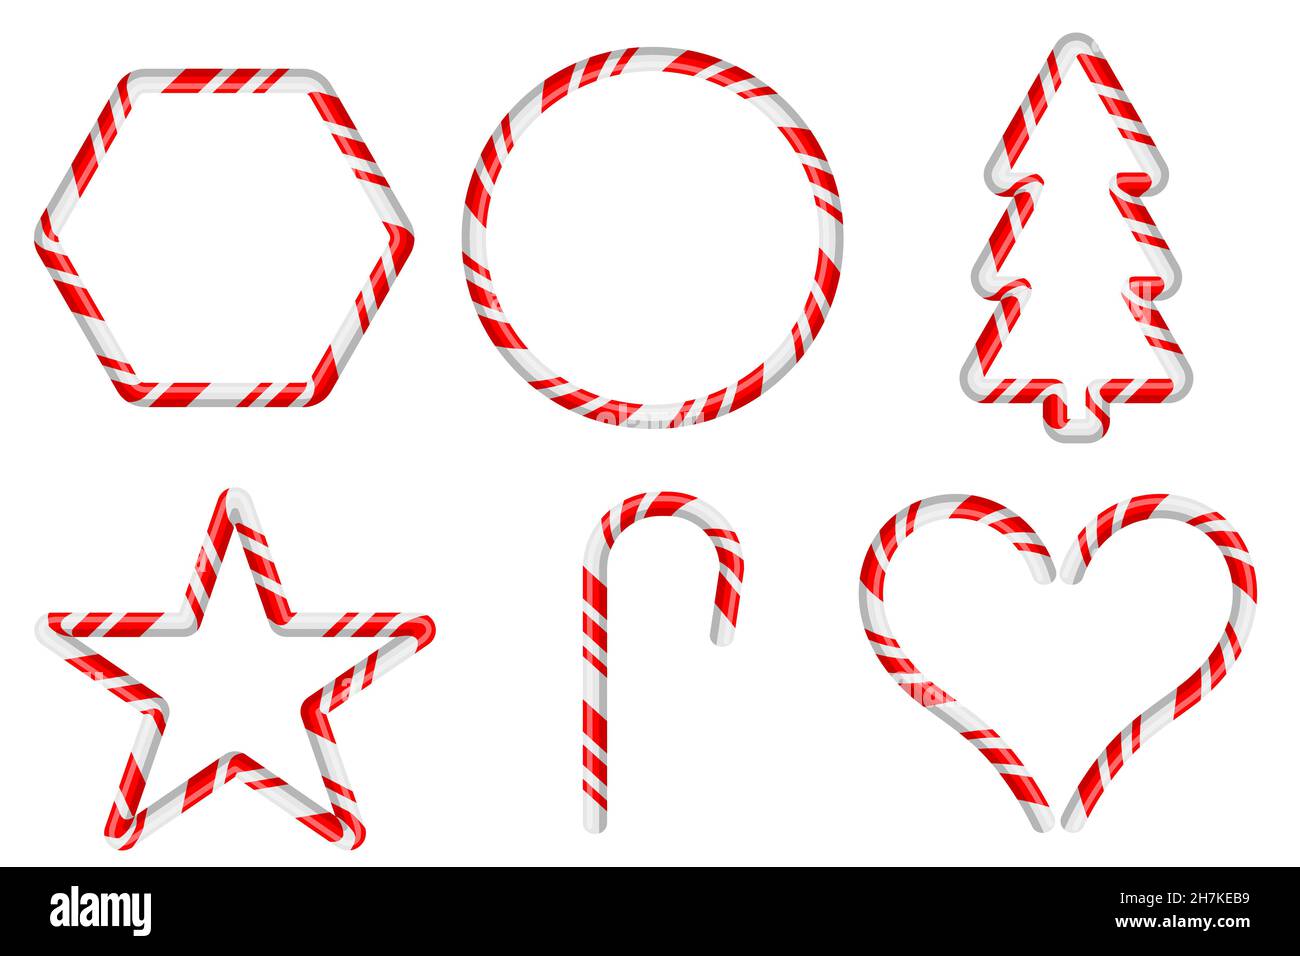 Varie decorazioni natalizie e cornici con modelli di canna di caramella isolati su sfondo bianco. Illustrazione vettoriale di design piatto Illustrazione Vettoriale